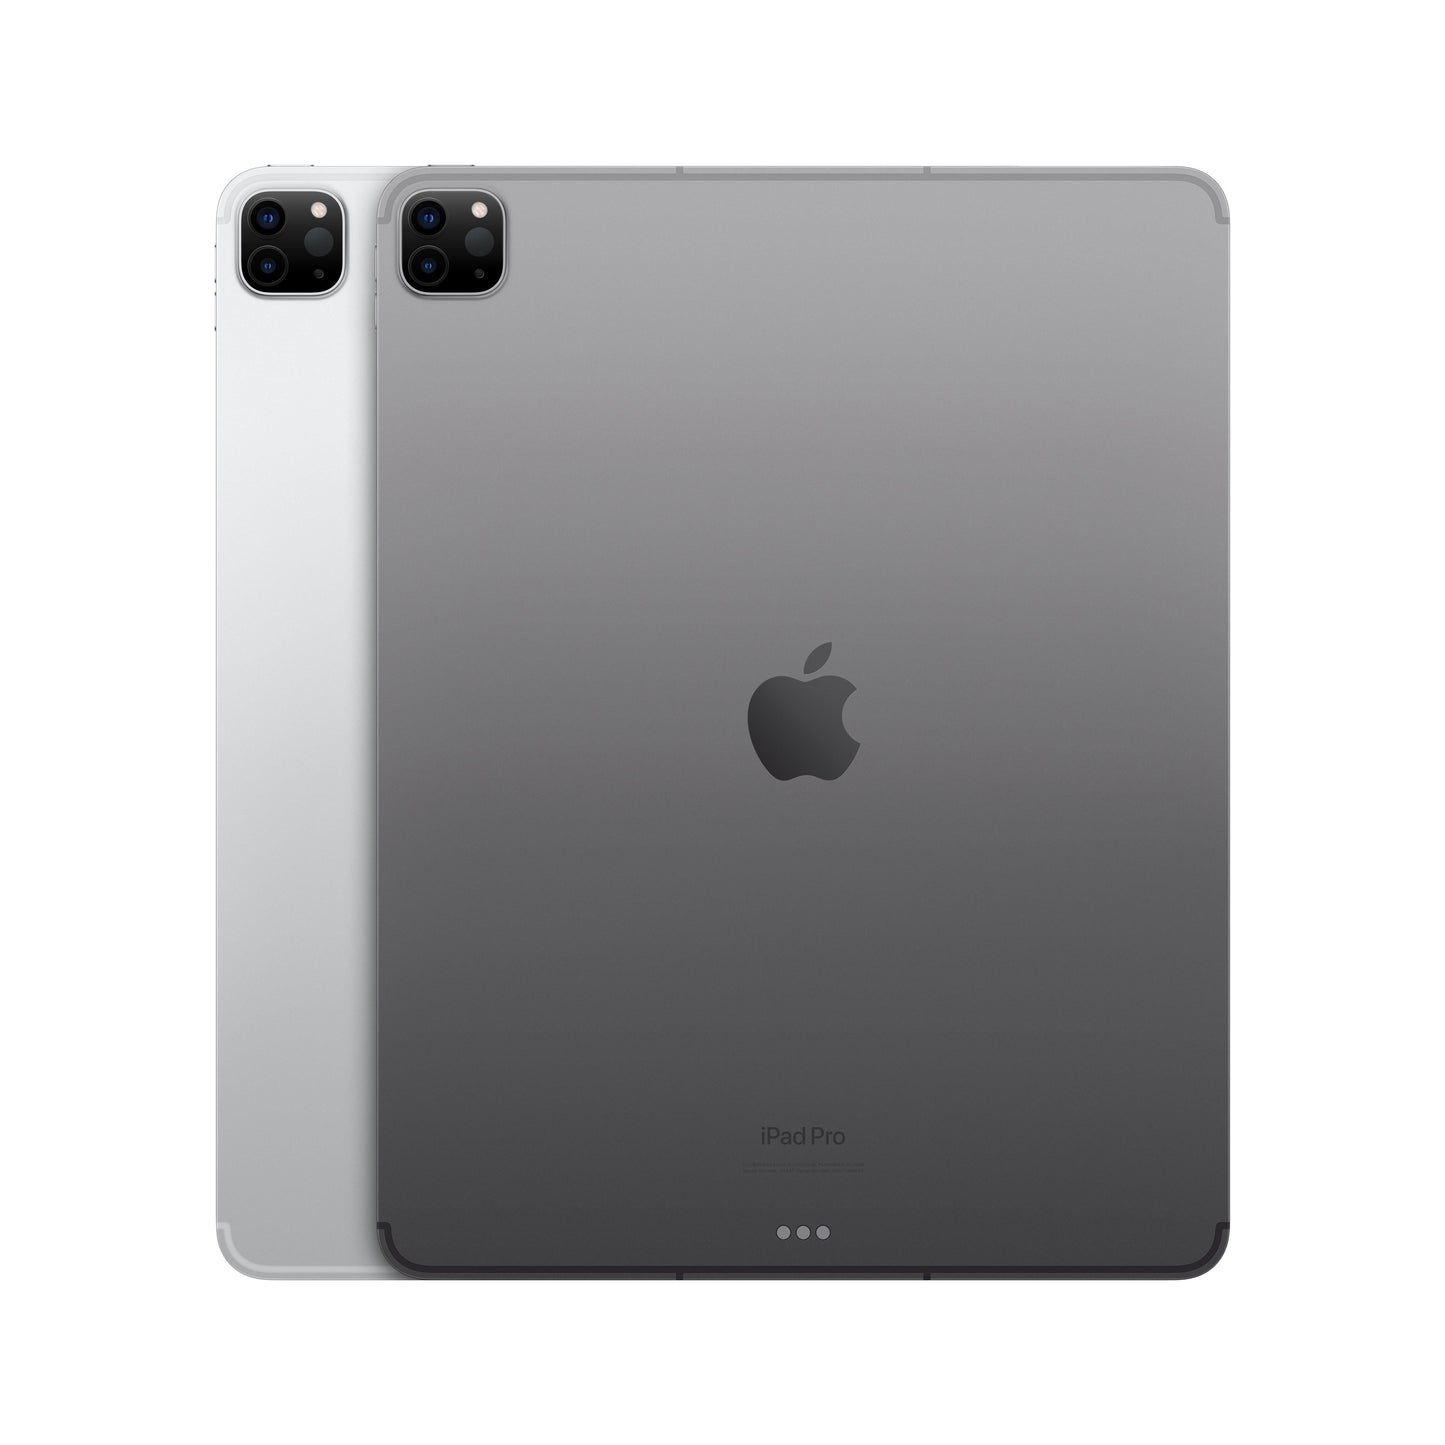 2022 12.9-inch iPad Pro Wi-Fi + Cellular 512GB - Silver (6th generation)